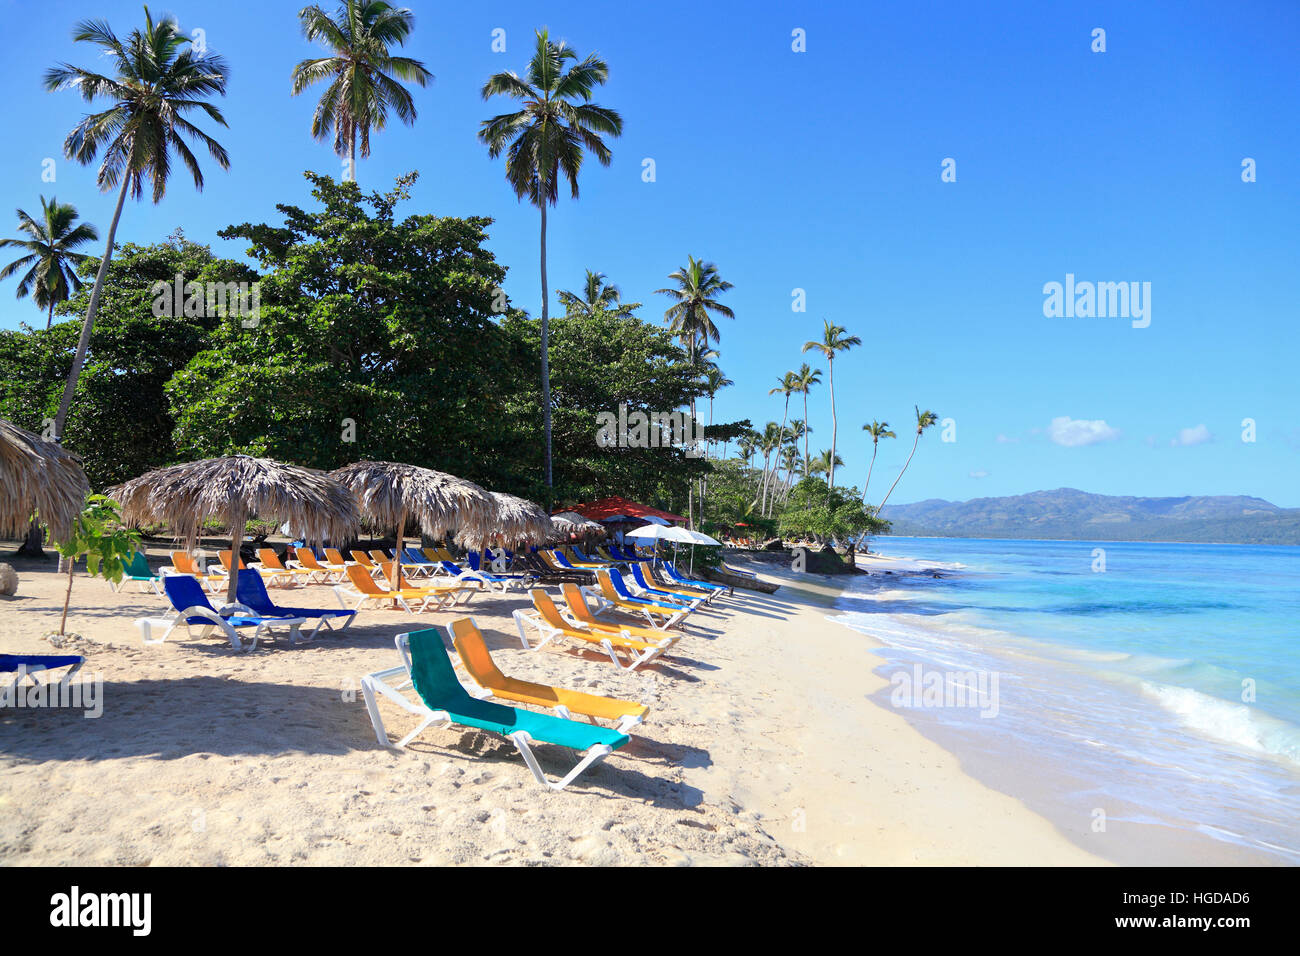 La Playta, hermosas playas tropicales con arena blanca cerca de las Galeras village, República Dominicana Foto de stock